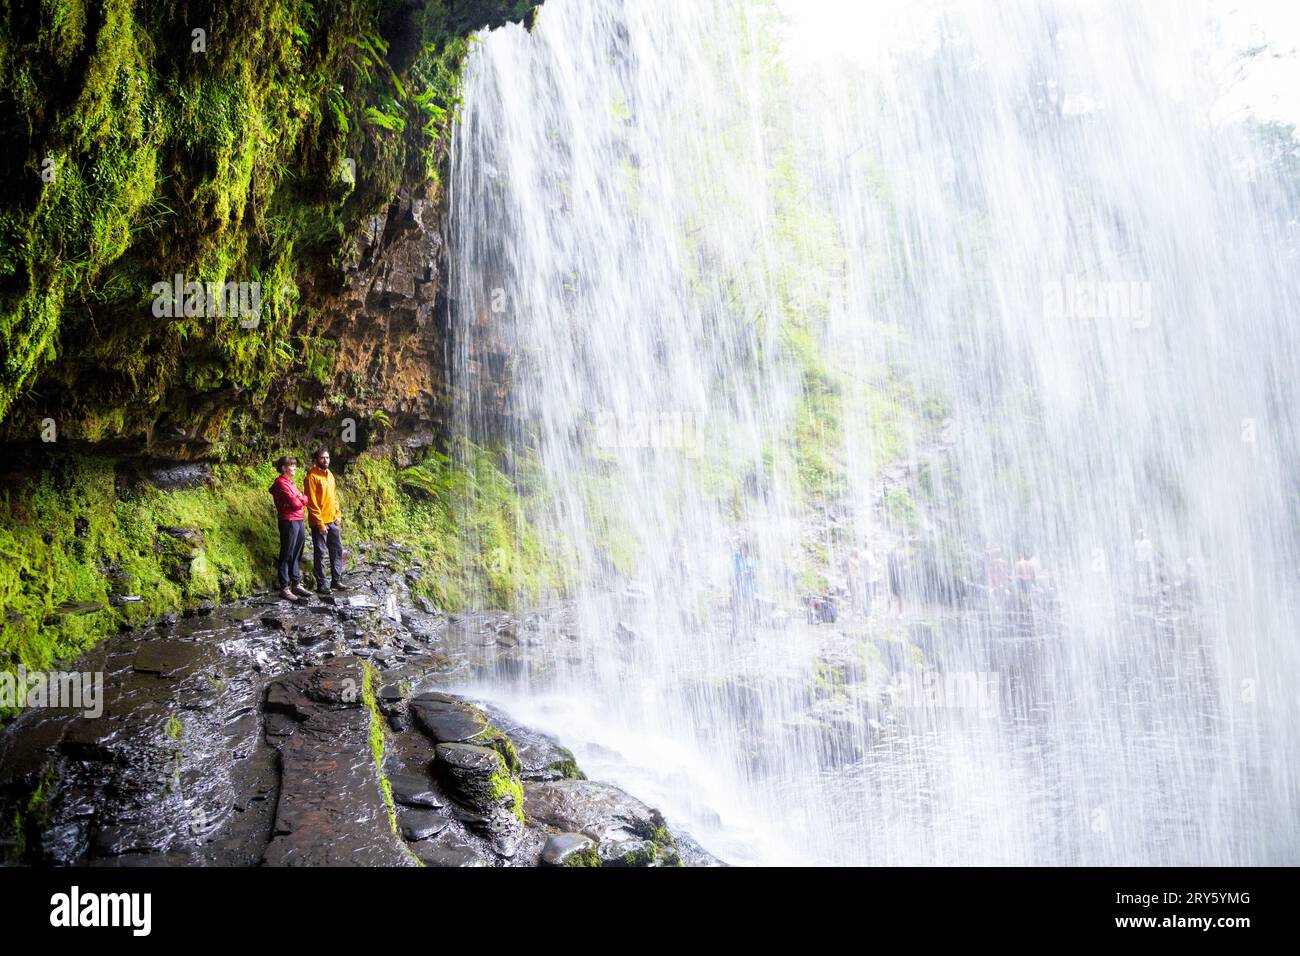 Menschen, die hinter dem Sgwd Yr Eira Wasserfall, Four Waterfalls Walk, Brecon Beacons National Park, Wales, Großbritannien stehen Stockfoto